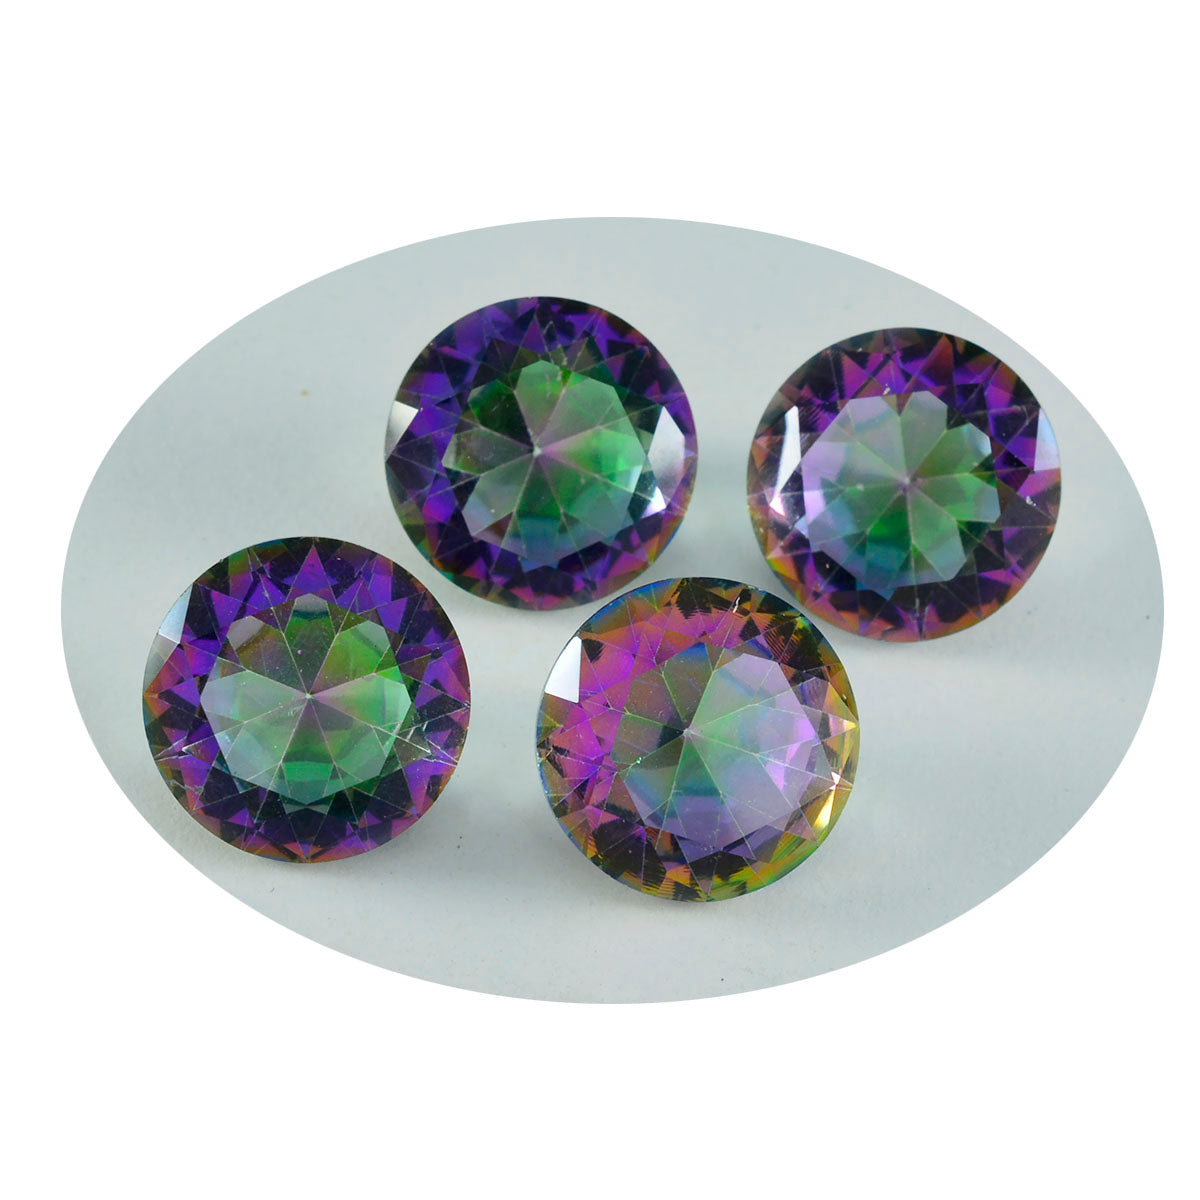 riyogems 1шт разноцветный мистический кварц ограненный 14x14 мм круглая форма +1 драгоценный камень качества